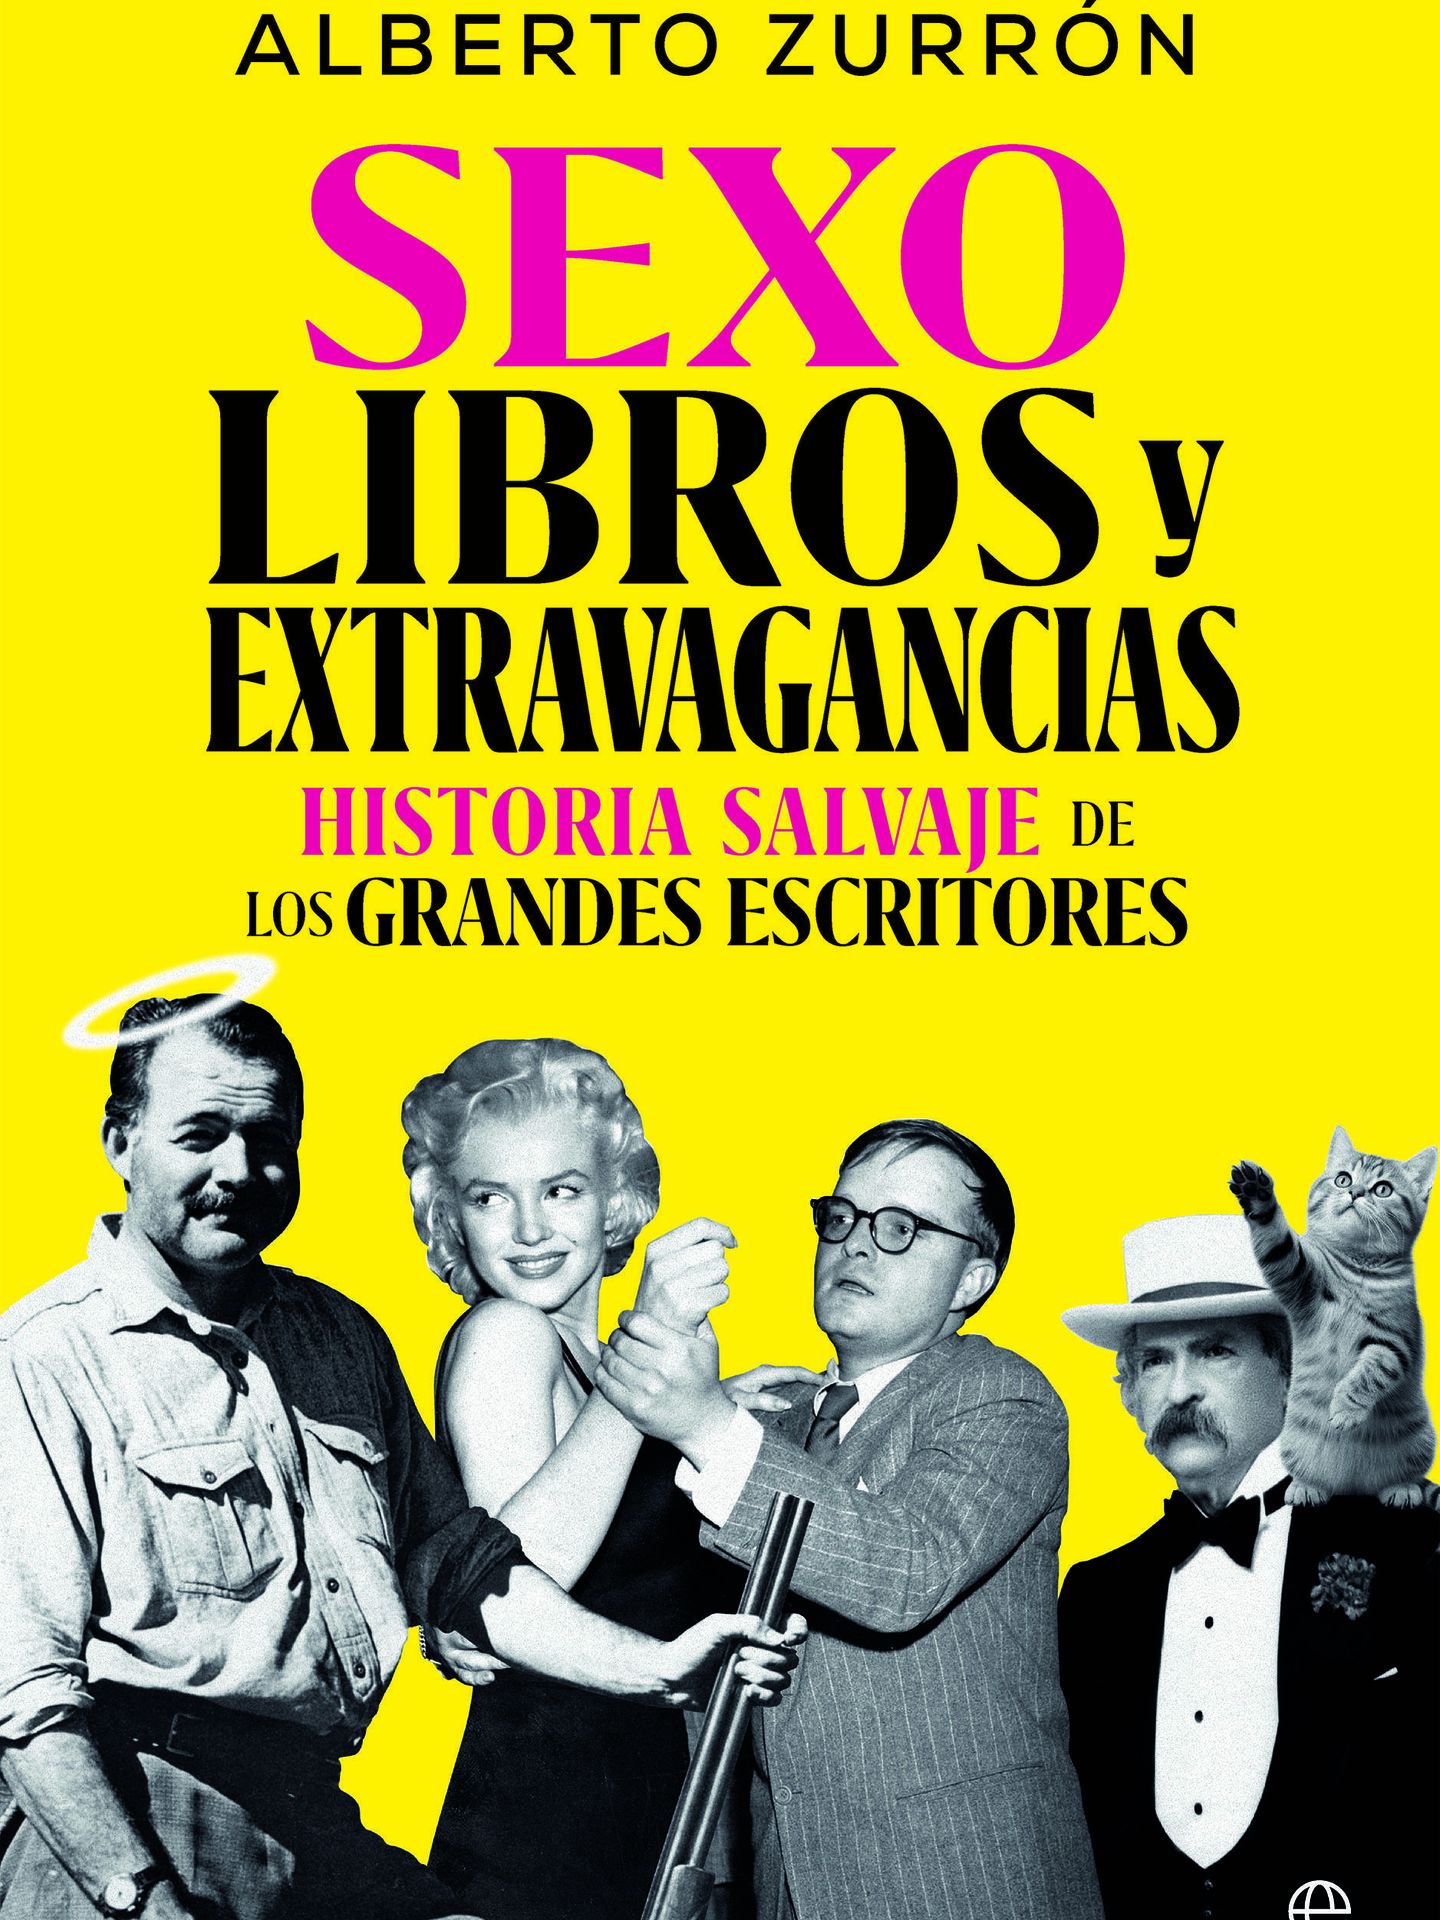 Portada del libo 'Sexo, libros y extravagancias', de Alberto Zurrón. 